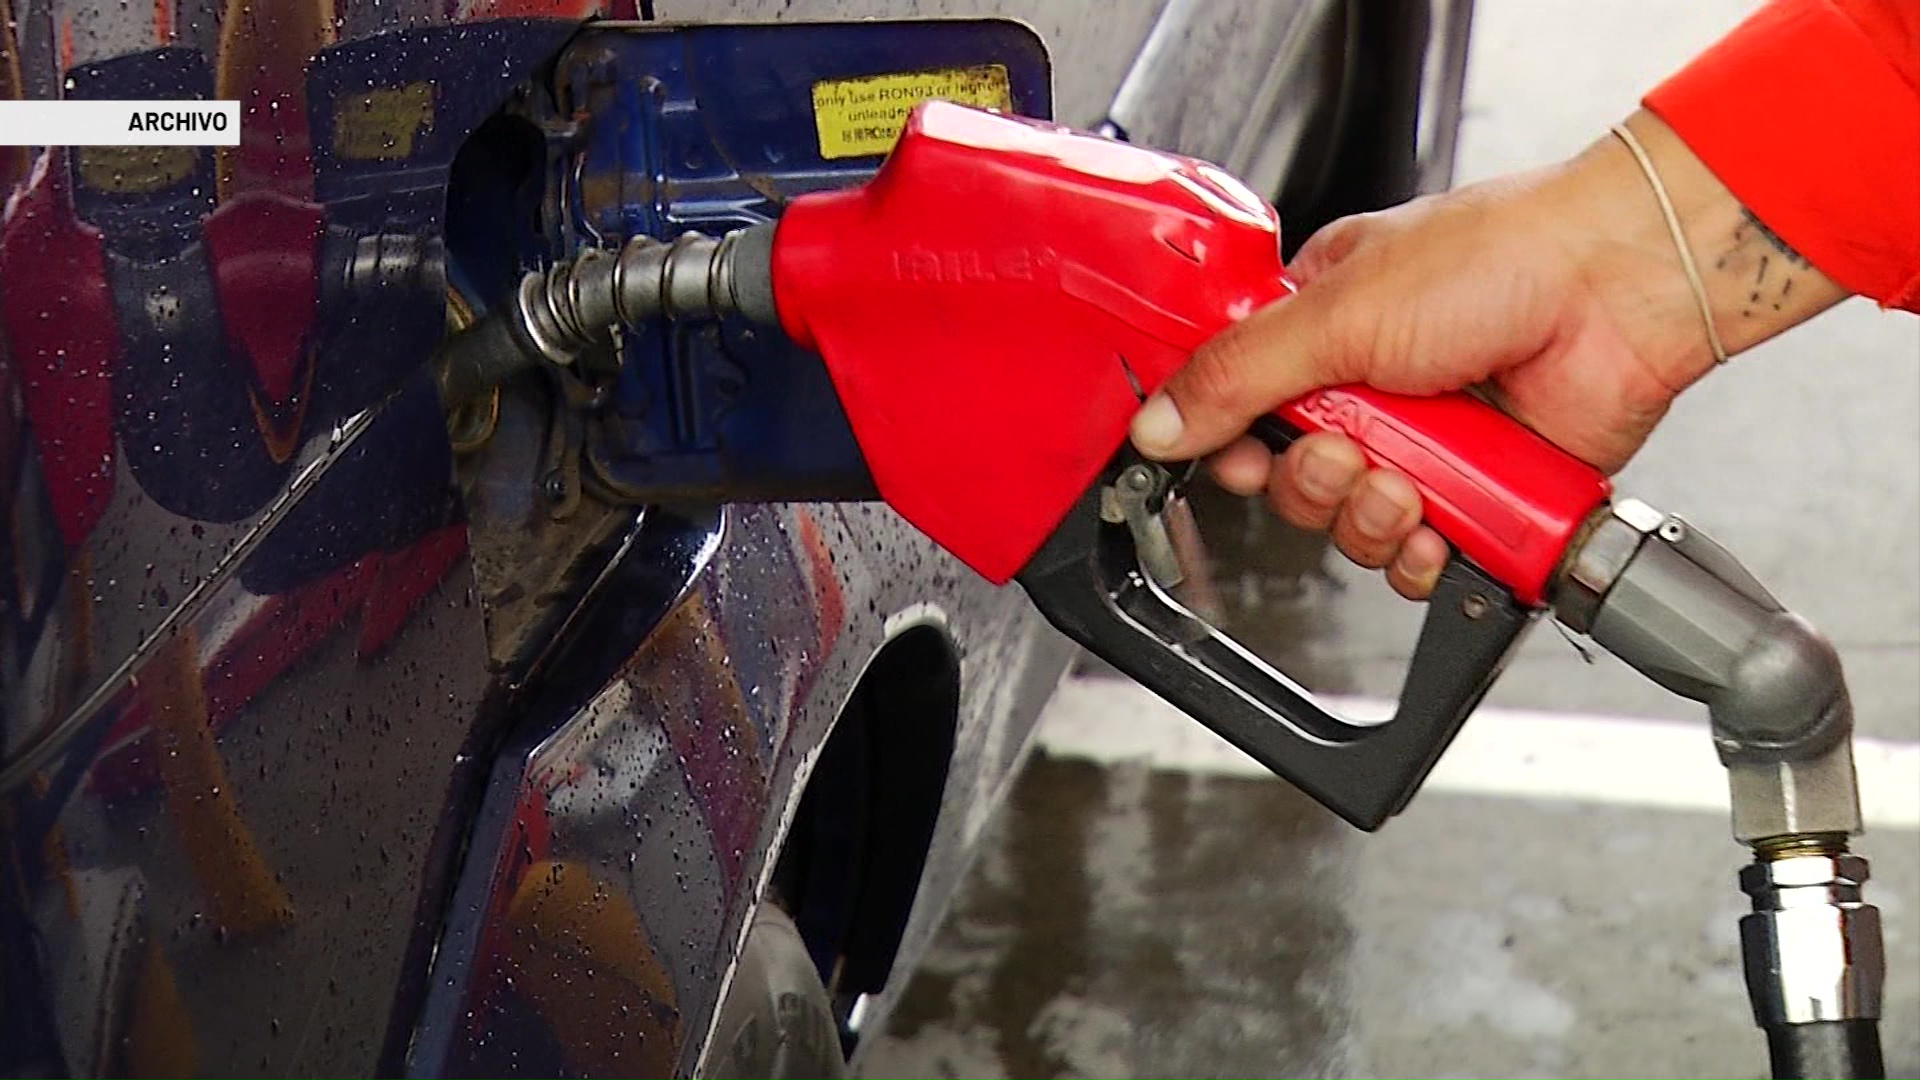 Precio diferencial de gasolina generaría venta ilegal